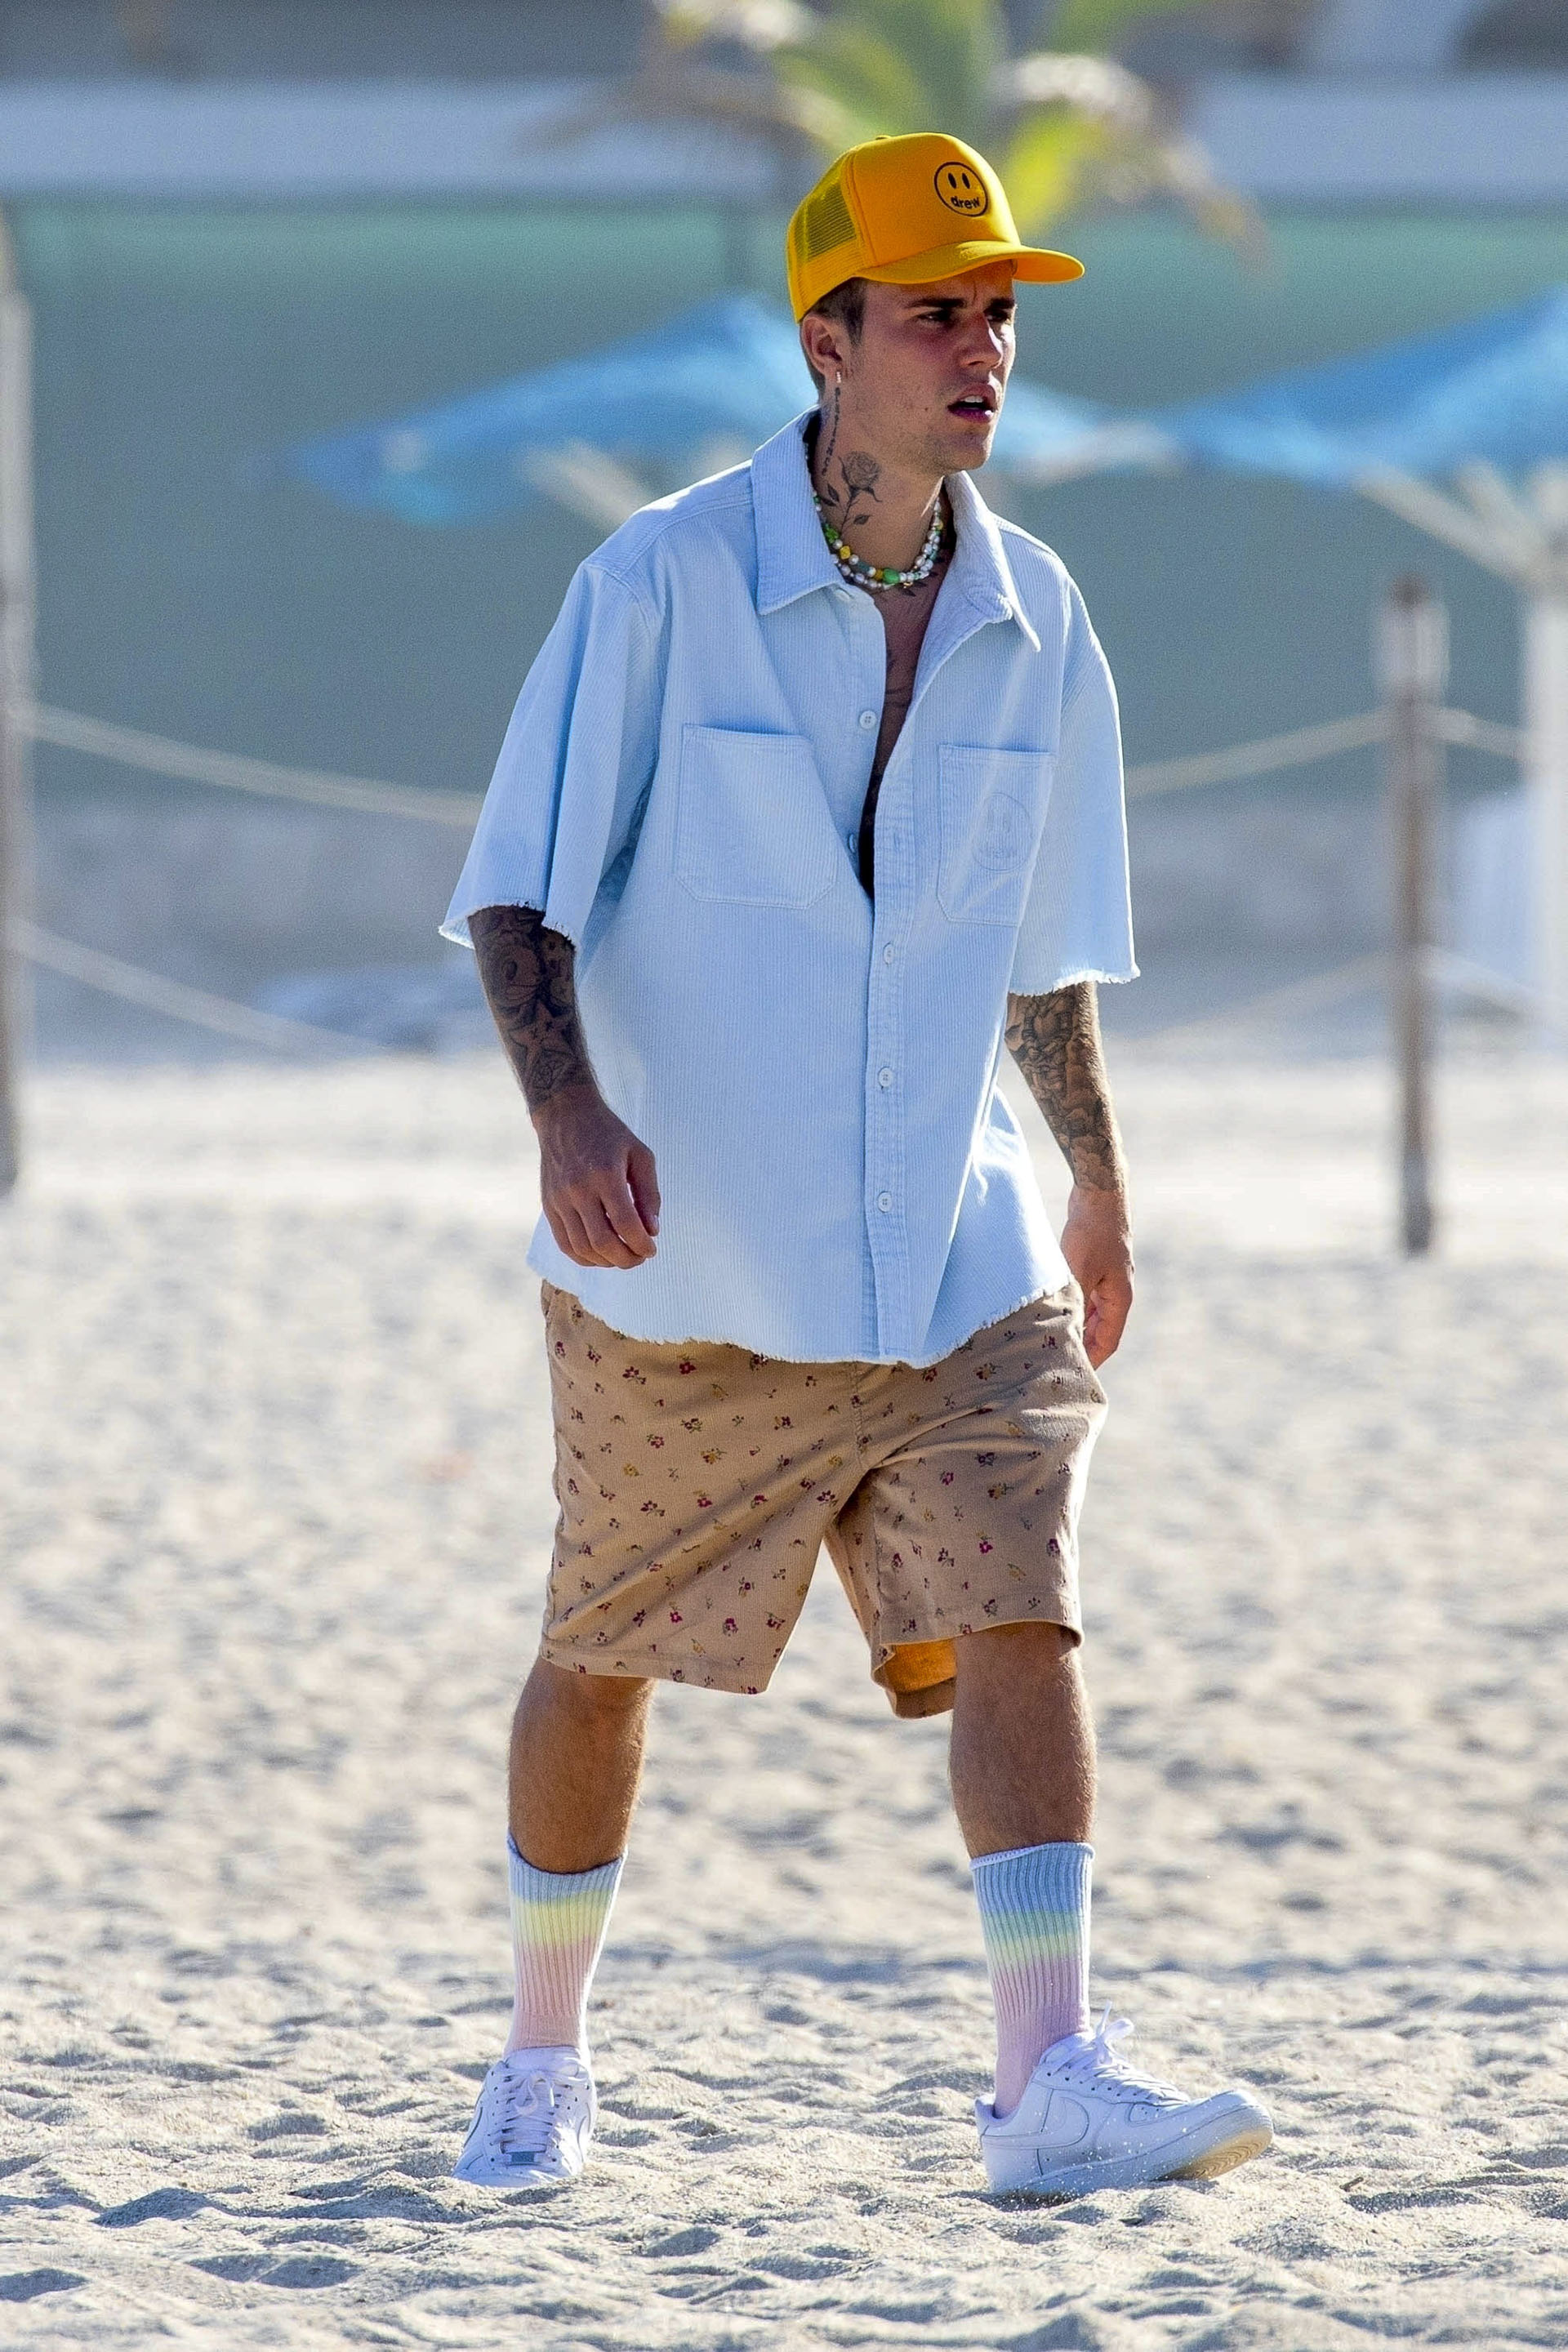 Vacaciones de verano. Justin Bieber viajó junto a su esposa, Hailey, y un grupo de amigos a Cabo San Lucas, en donde disfrutó de las paradisíacas playas. Allí se lo vio con un traje de baño estampado, camisa celeste y gorra amarilla